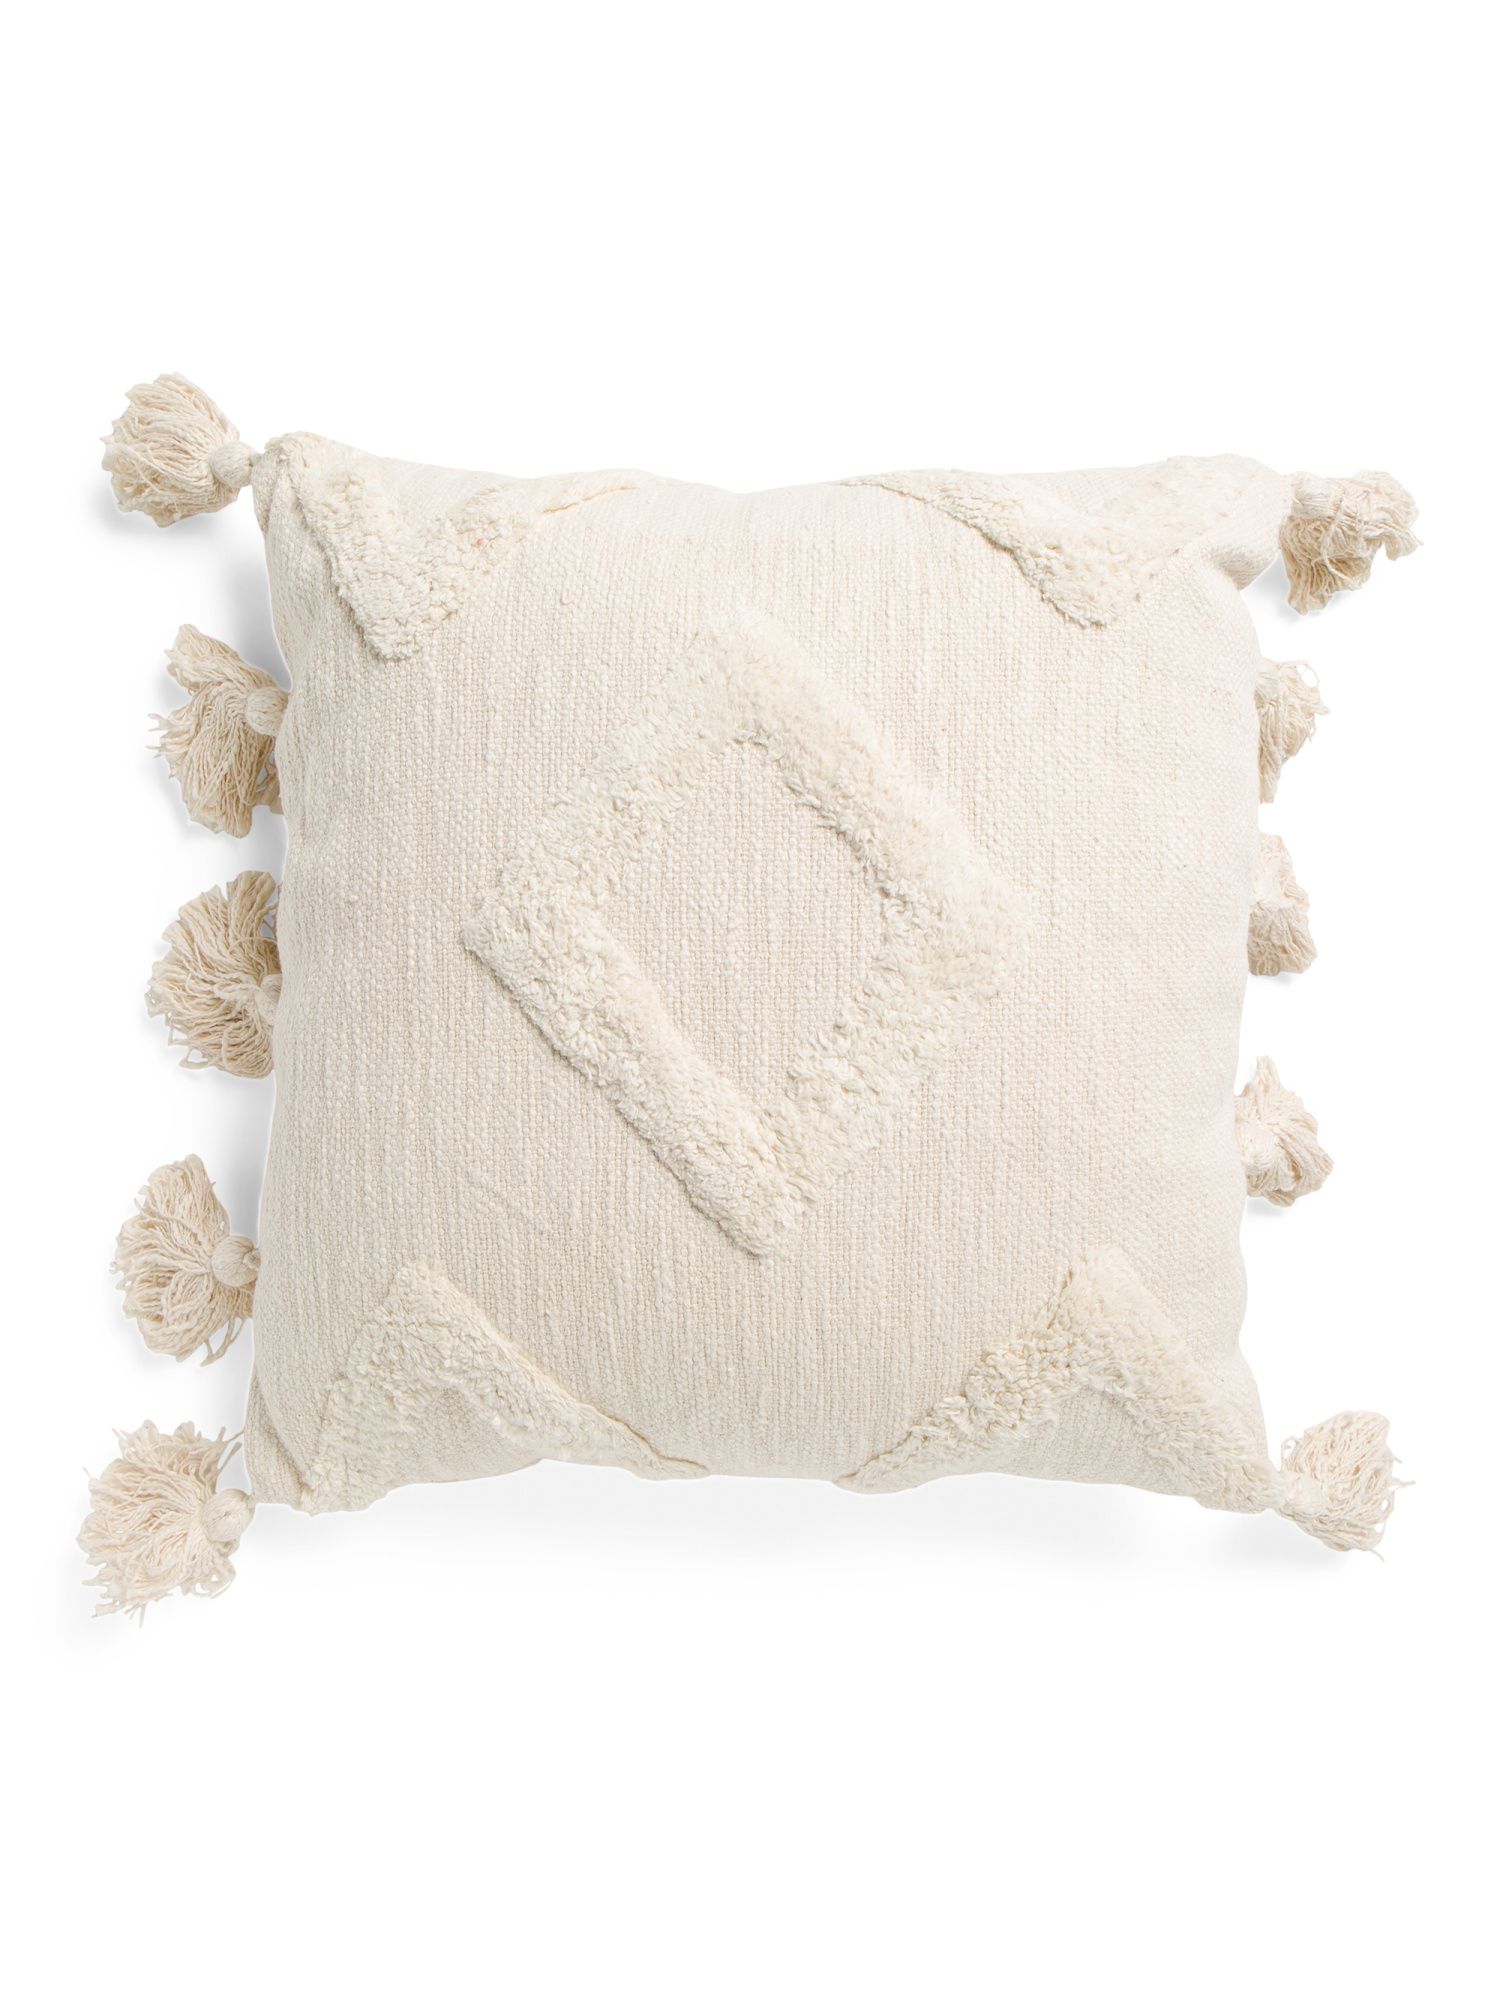 20x20 Diamond Texture Pillow With Tassels | TJ Maxx